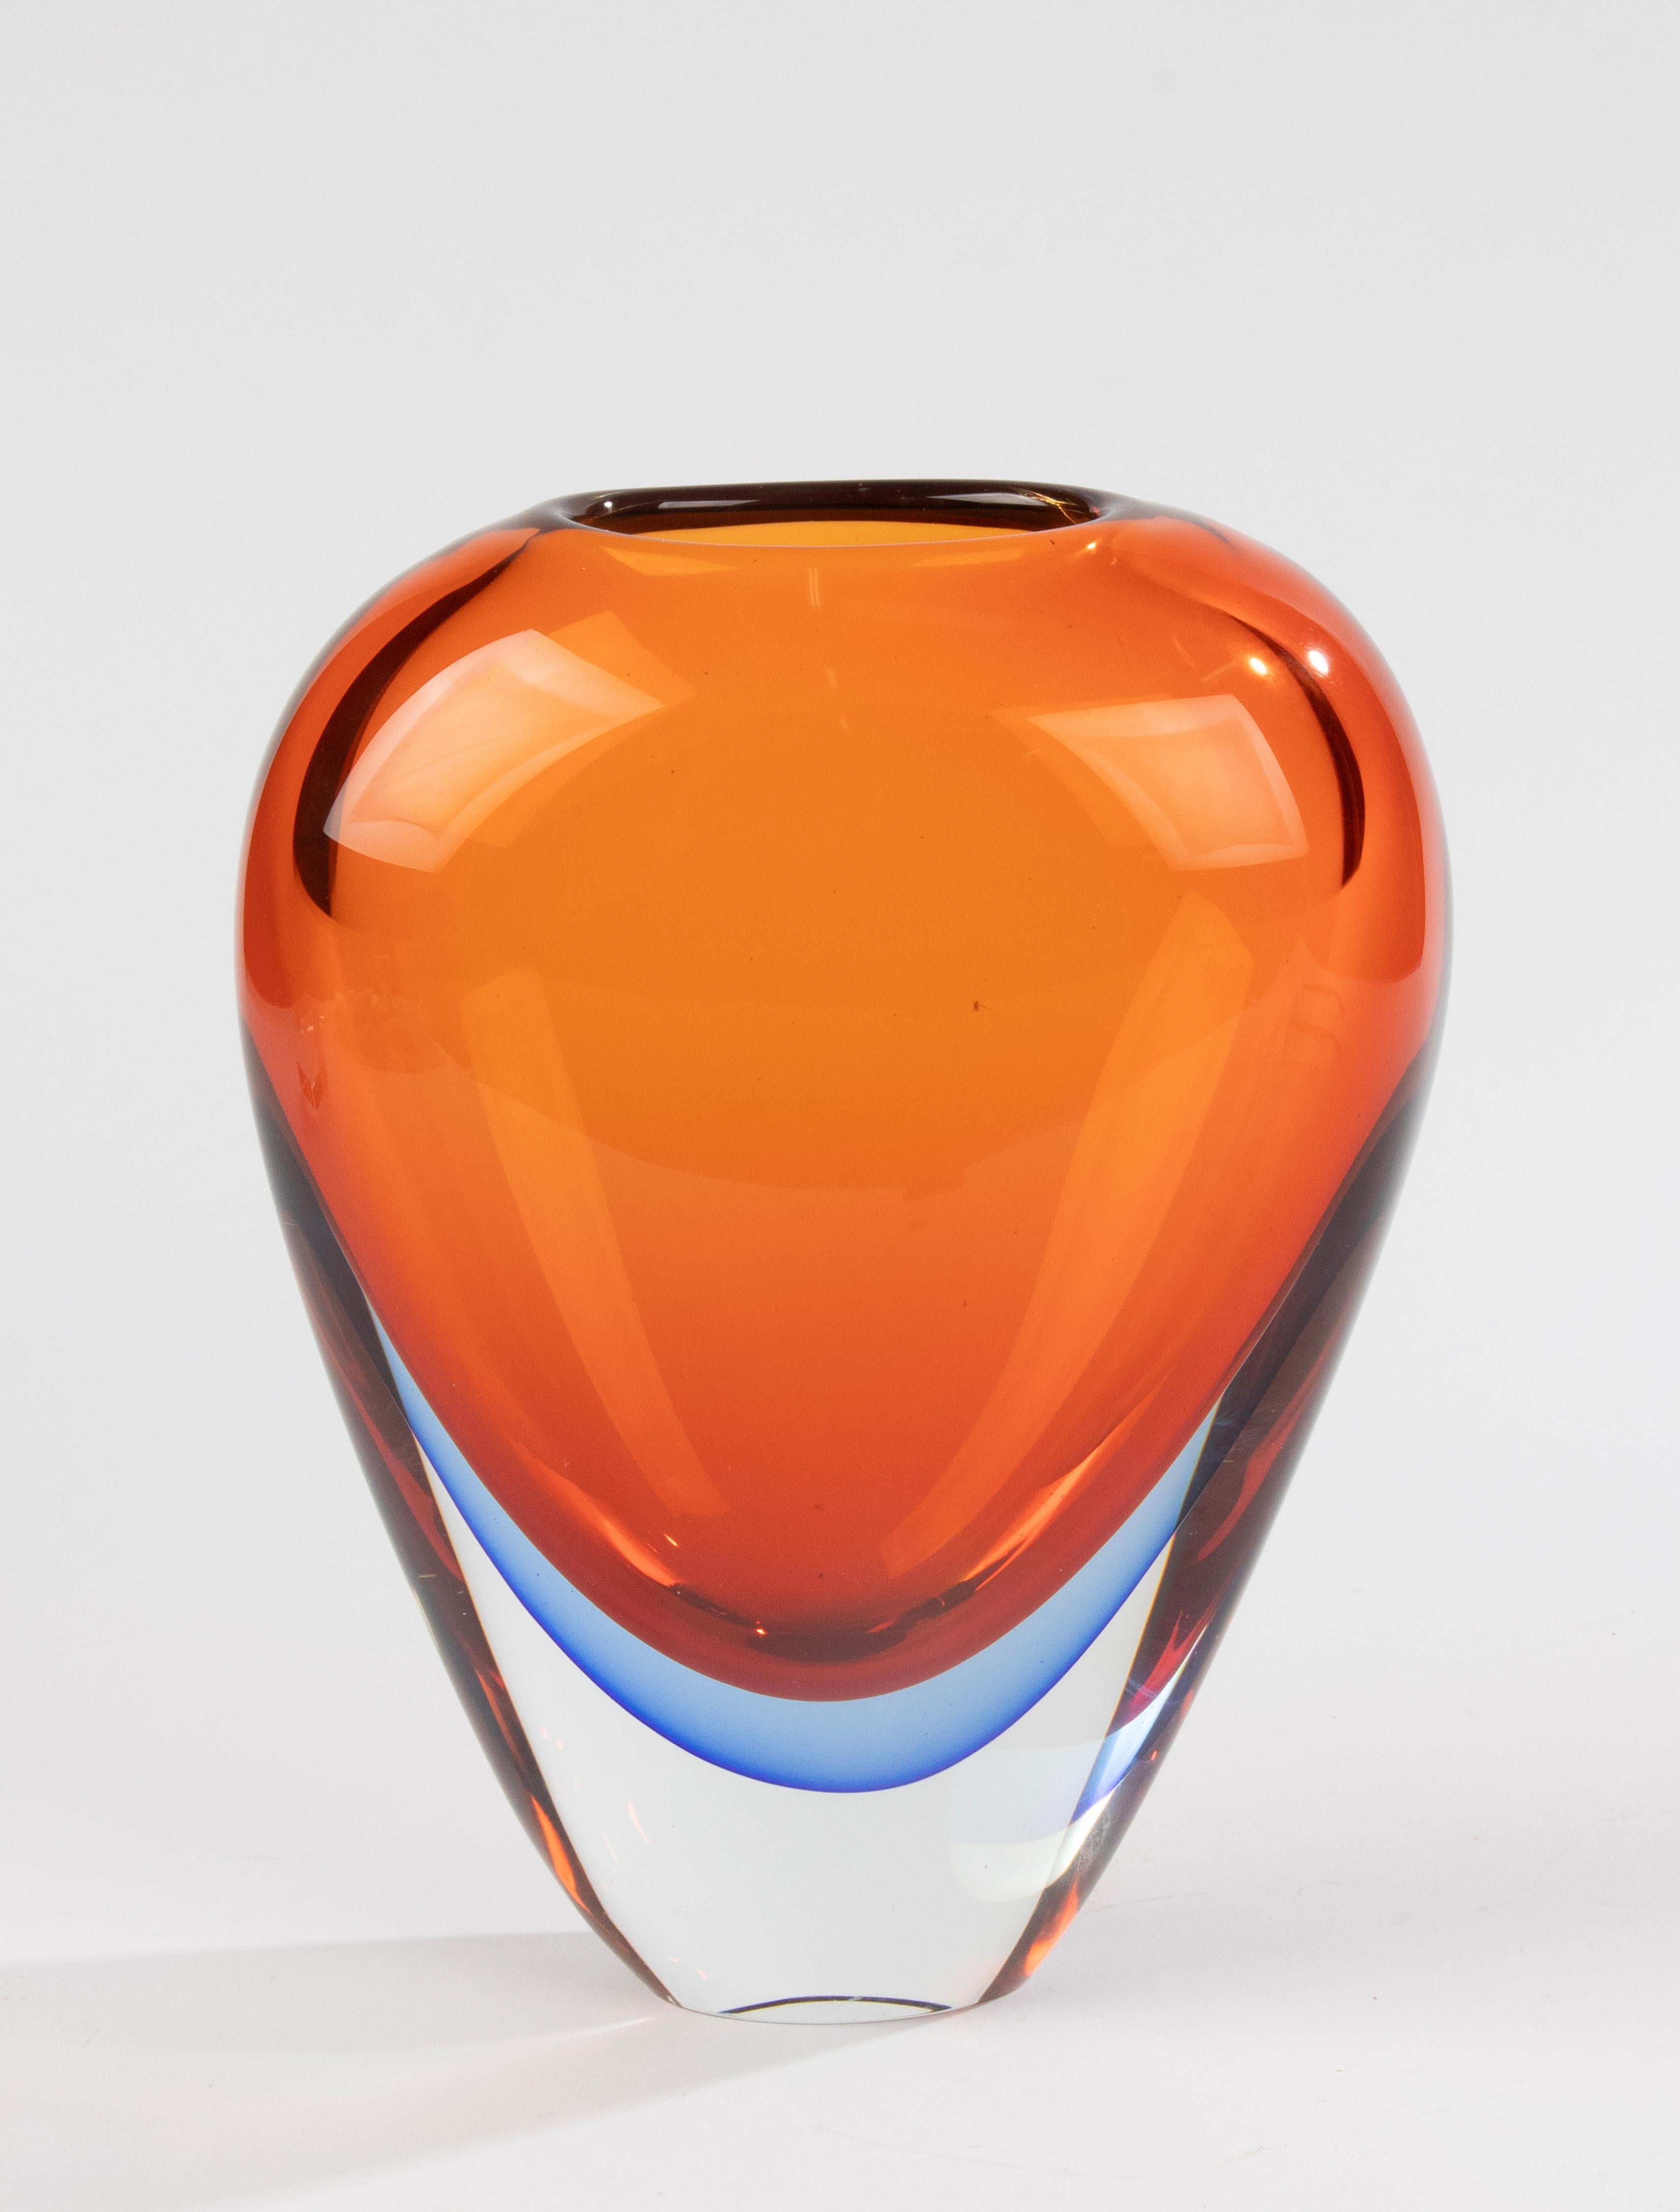 Magnifique vase en verre de Murano, attribué au designer italien Flavio poli. 
Le vase est en très bon état, sans éclats ni morsures de feta. 
De belles couleurs. 
Parois lourdes et épaisses

Dimensions : 20 x 11 cm et 26,5 cm de haut : 20 x 11 cm